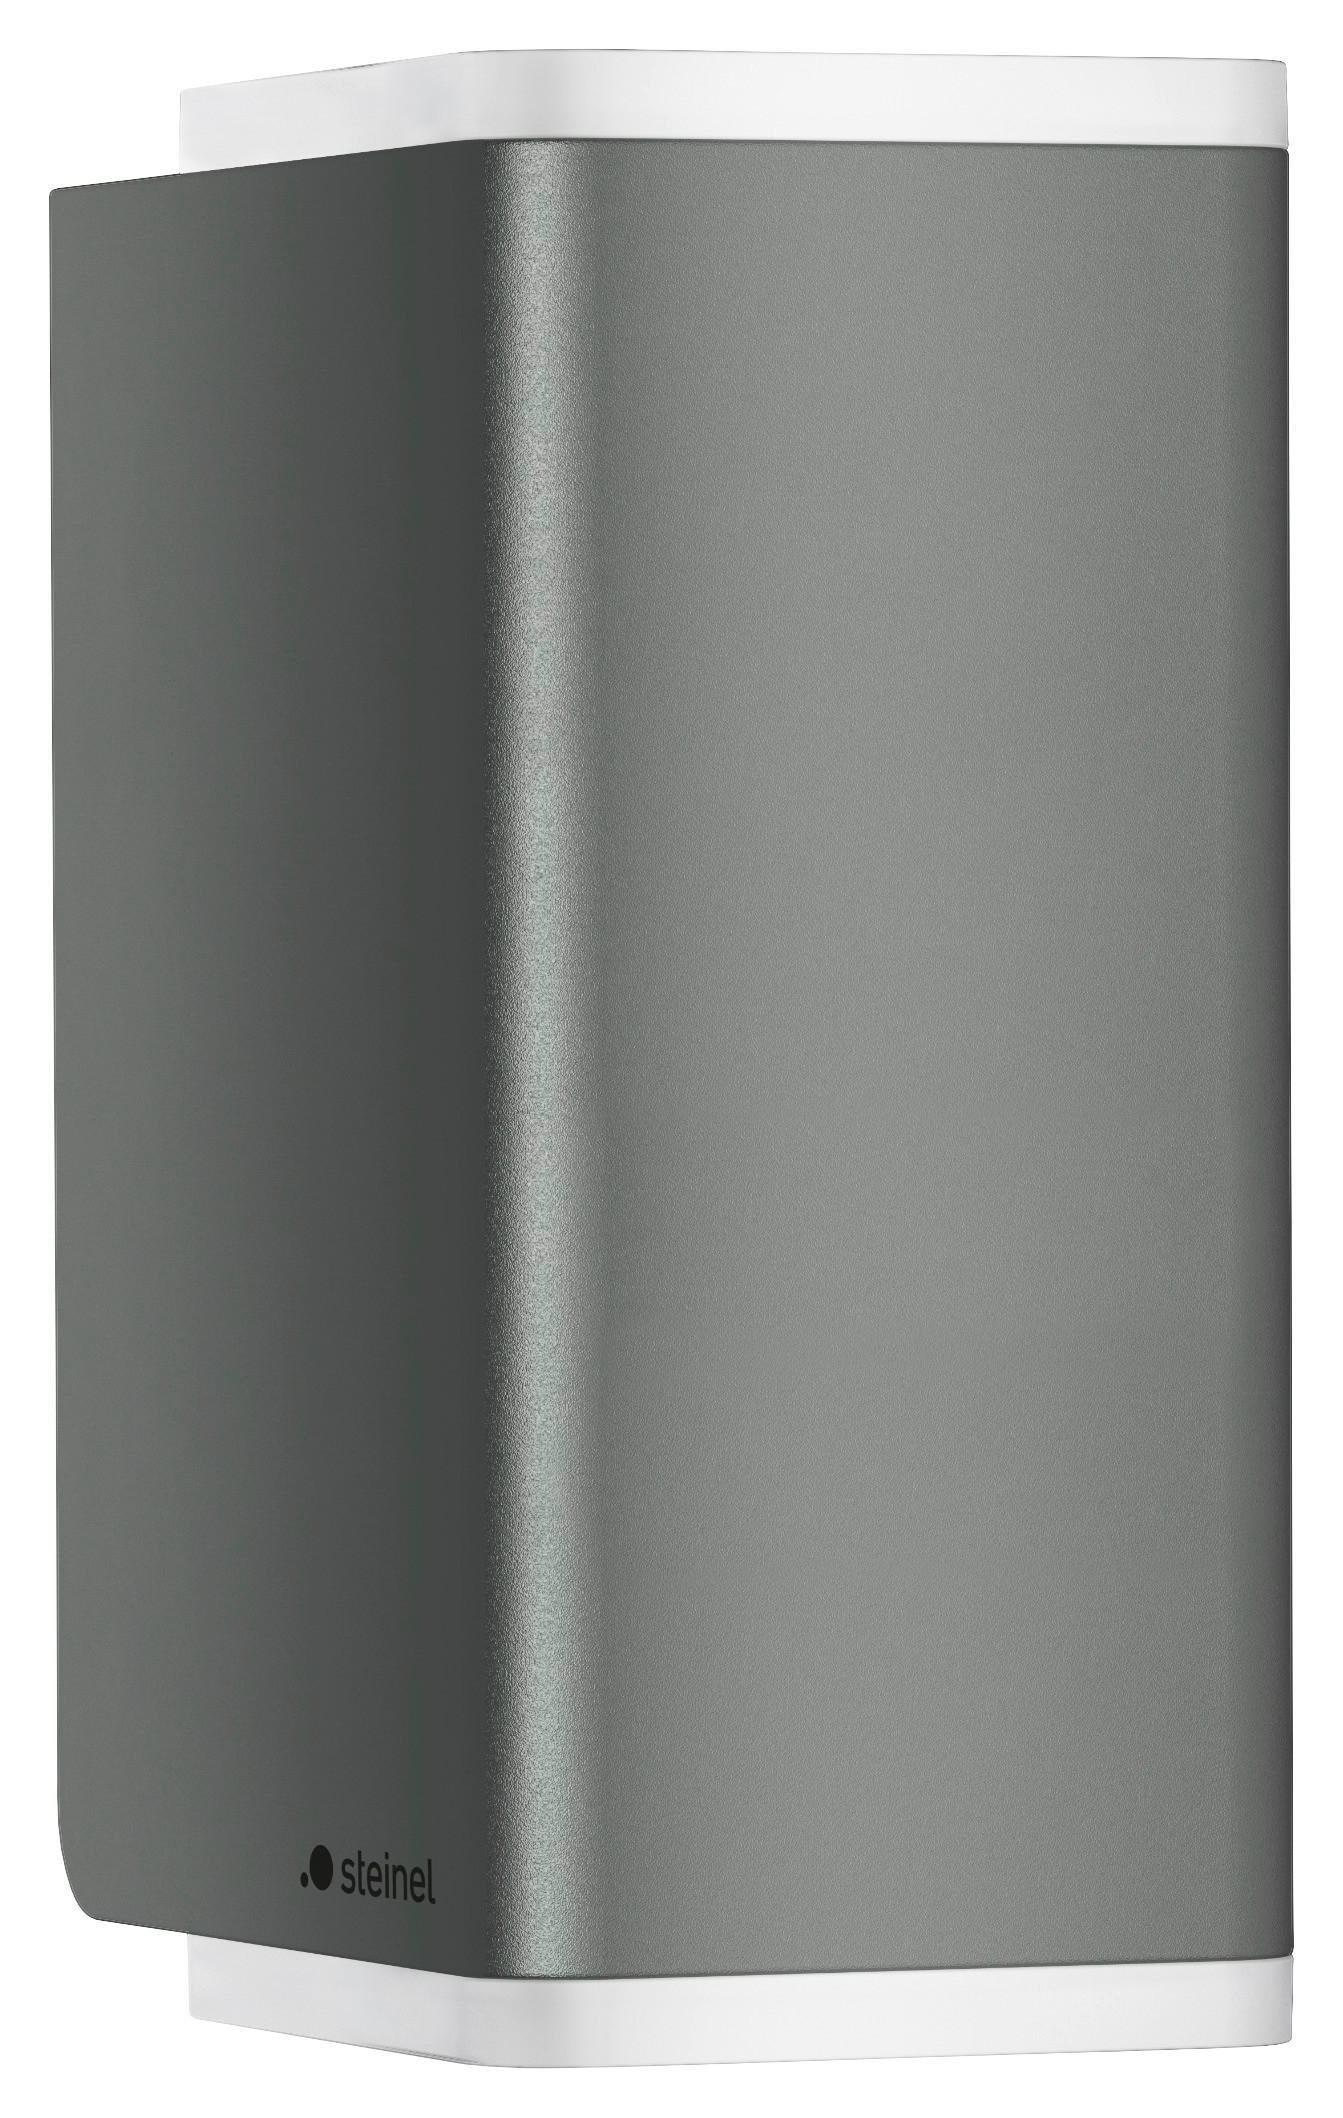 LED-AUßENLEUCHTE - Anthrazit, Design, Metall (9,2/6,3/13,7cm) - Steinel